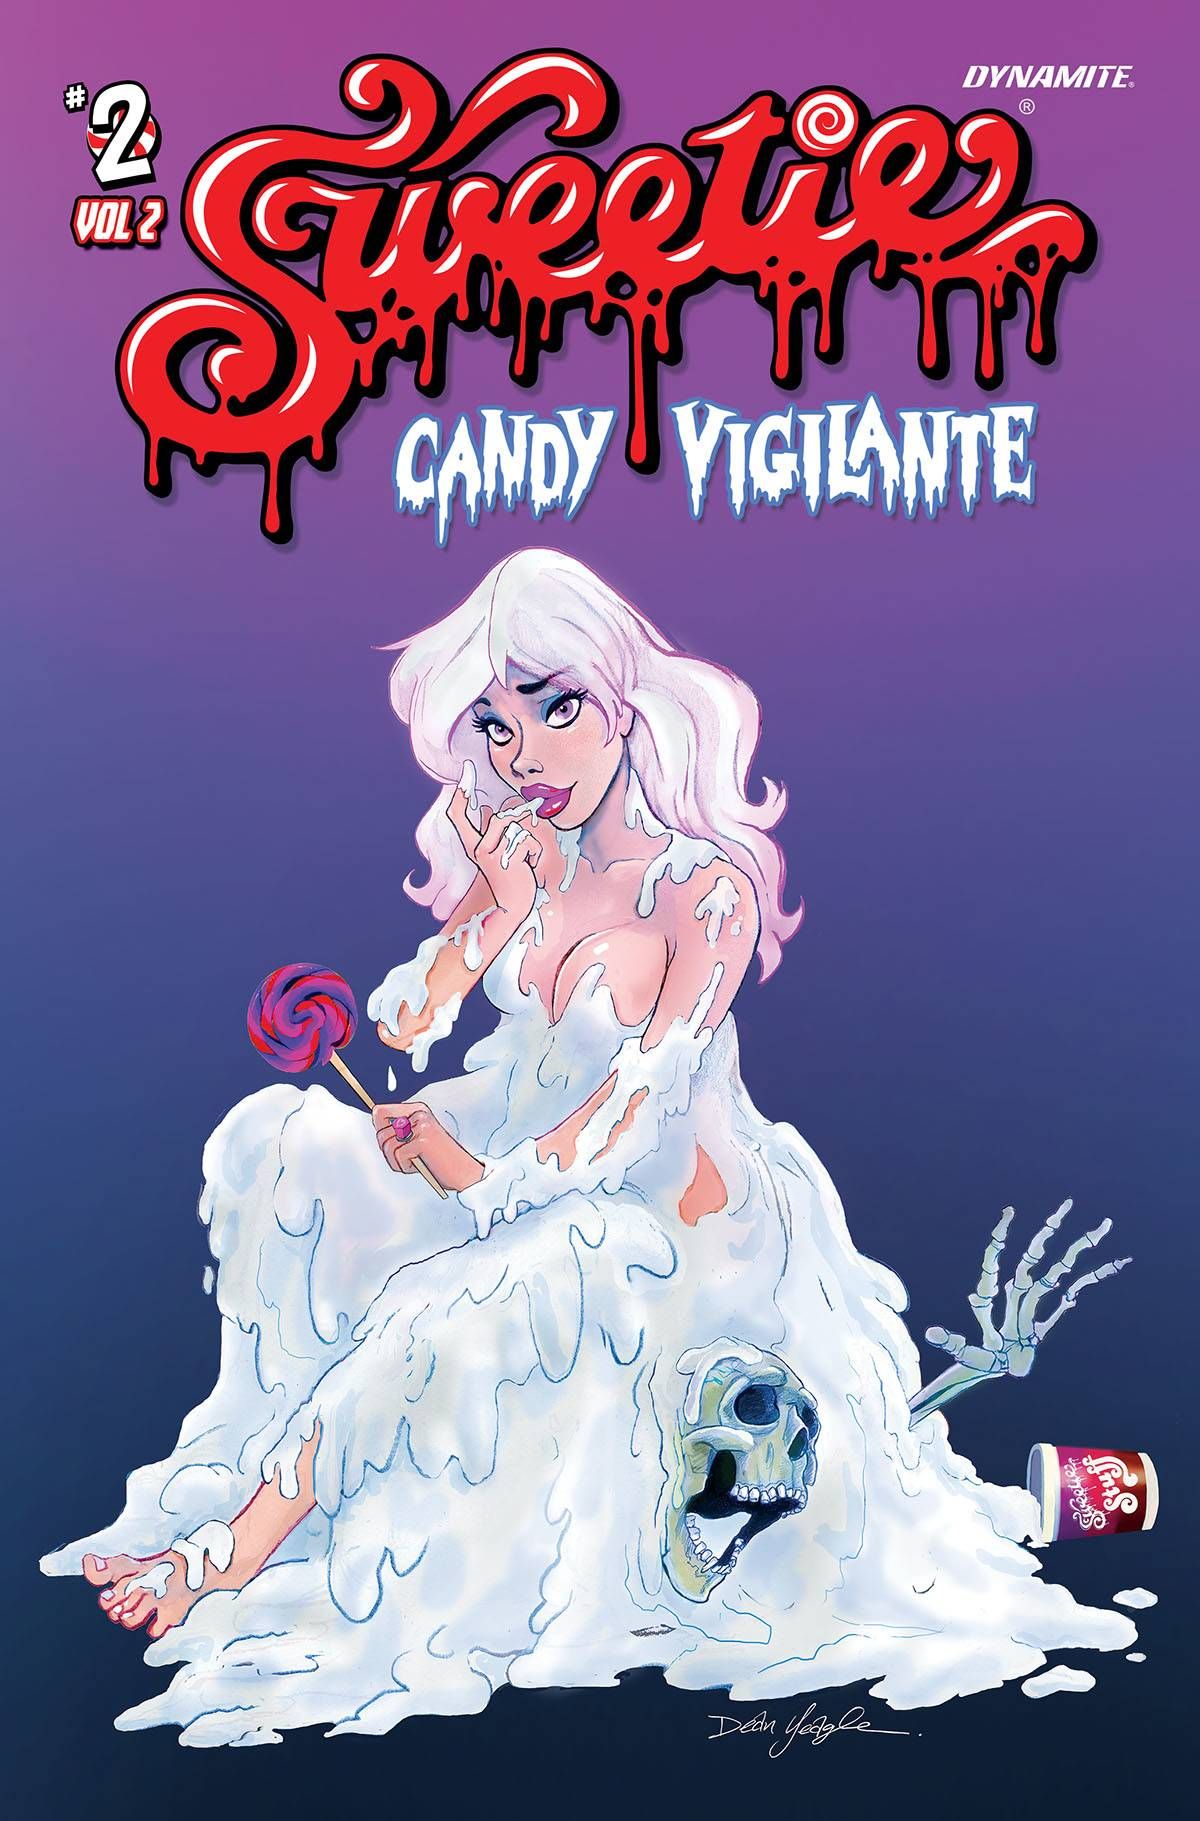 Sweetie Candy Vigilante Vol 2 #2 Comic